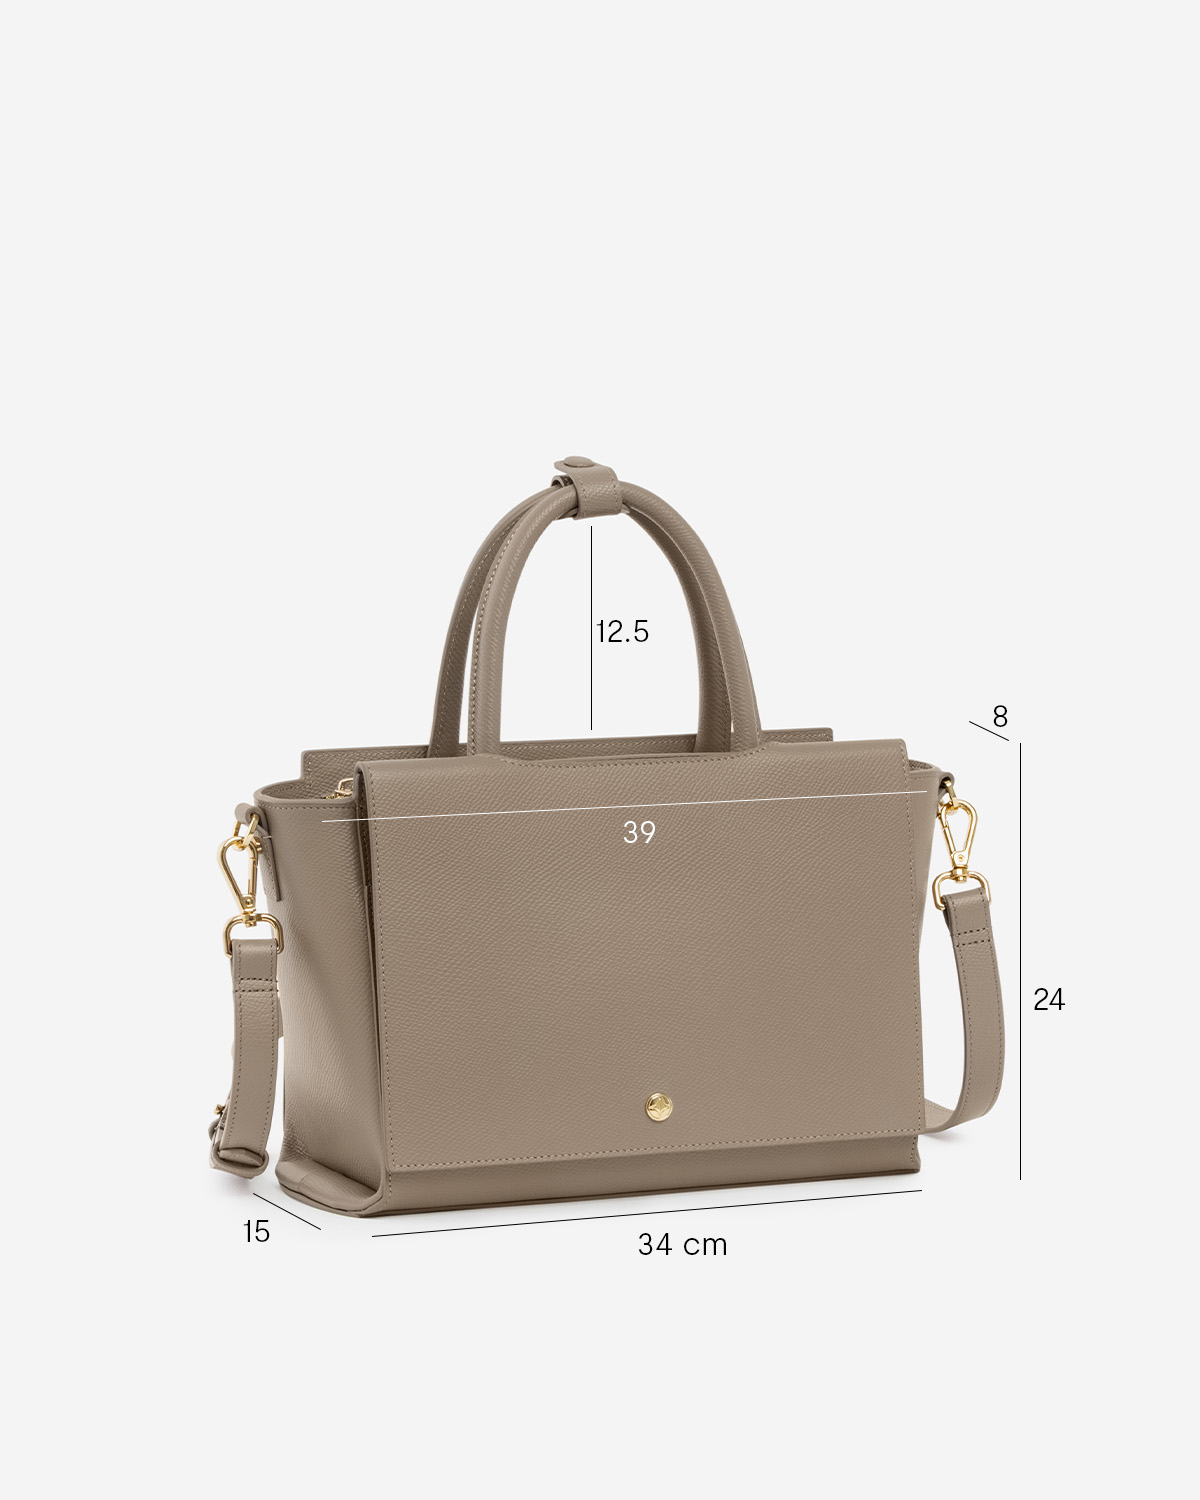 กระเป๋าถือหนังแท้ VERA Heidi Leather Handbag, ไซส์ 34 สี Taupe